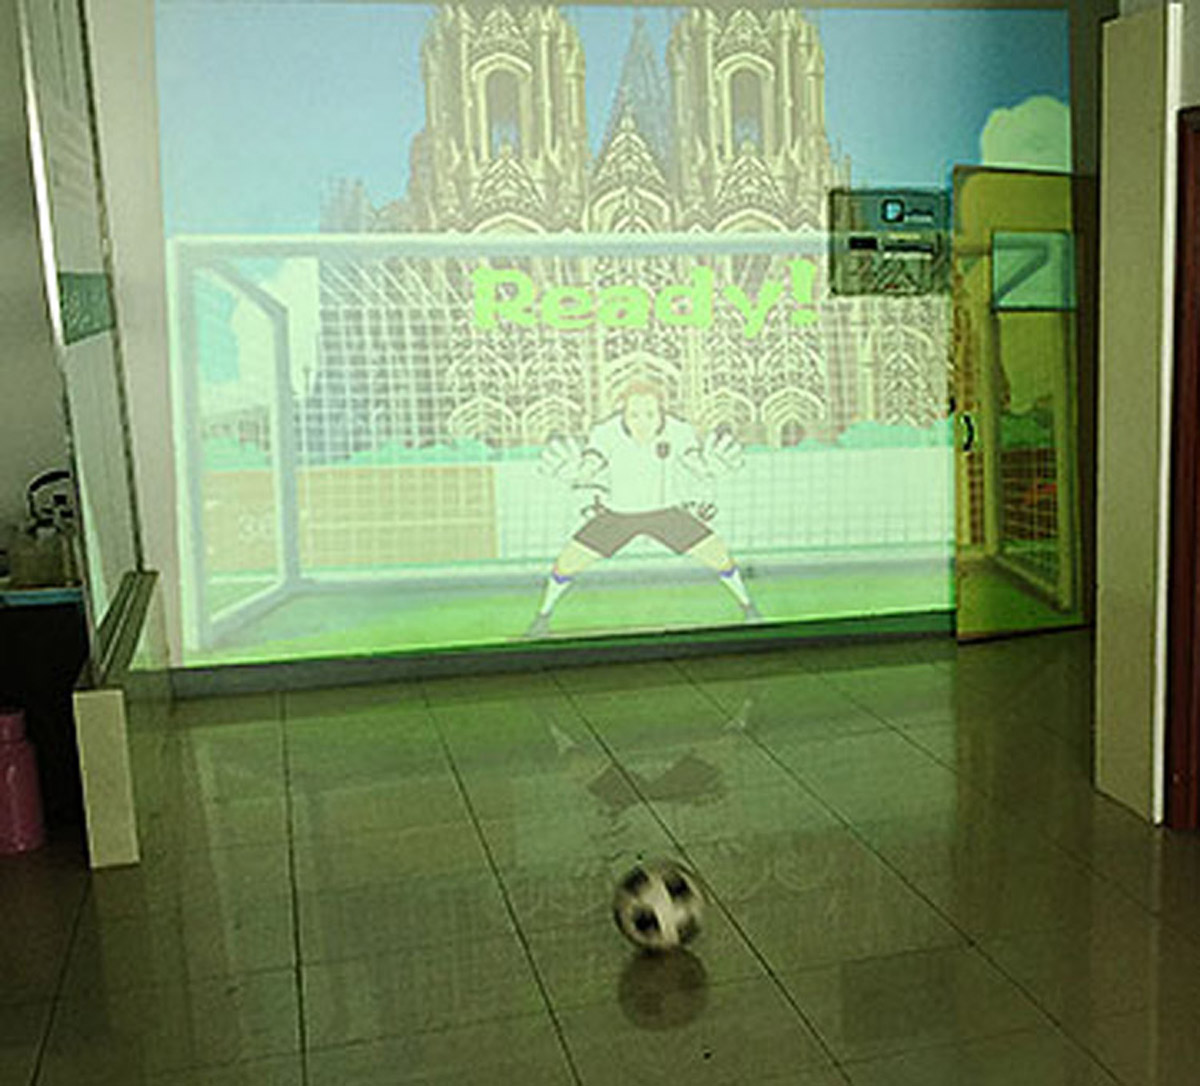 媒体互动使用体感识别技术的虚拟足球射门.jpg